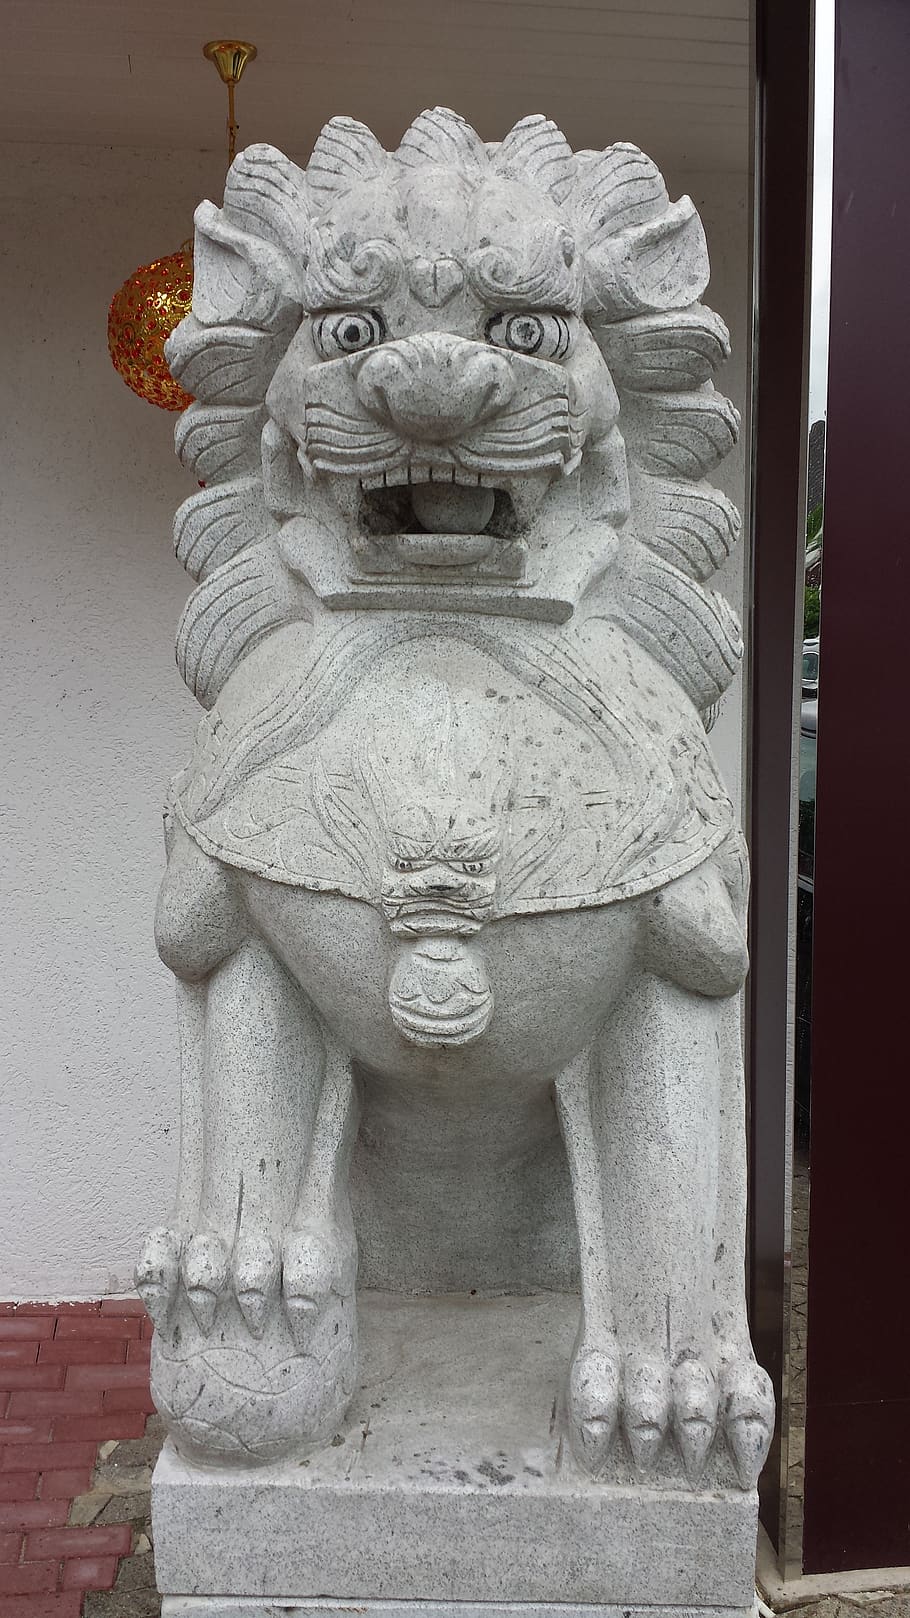 dragón, chino, piedra, figura, león, símbolo, restaurante, escultura, representación, arte y artesanía